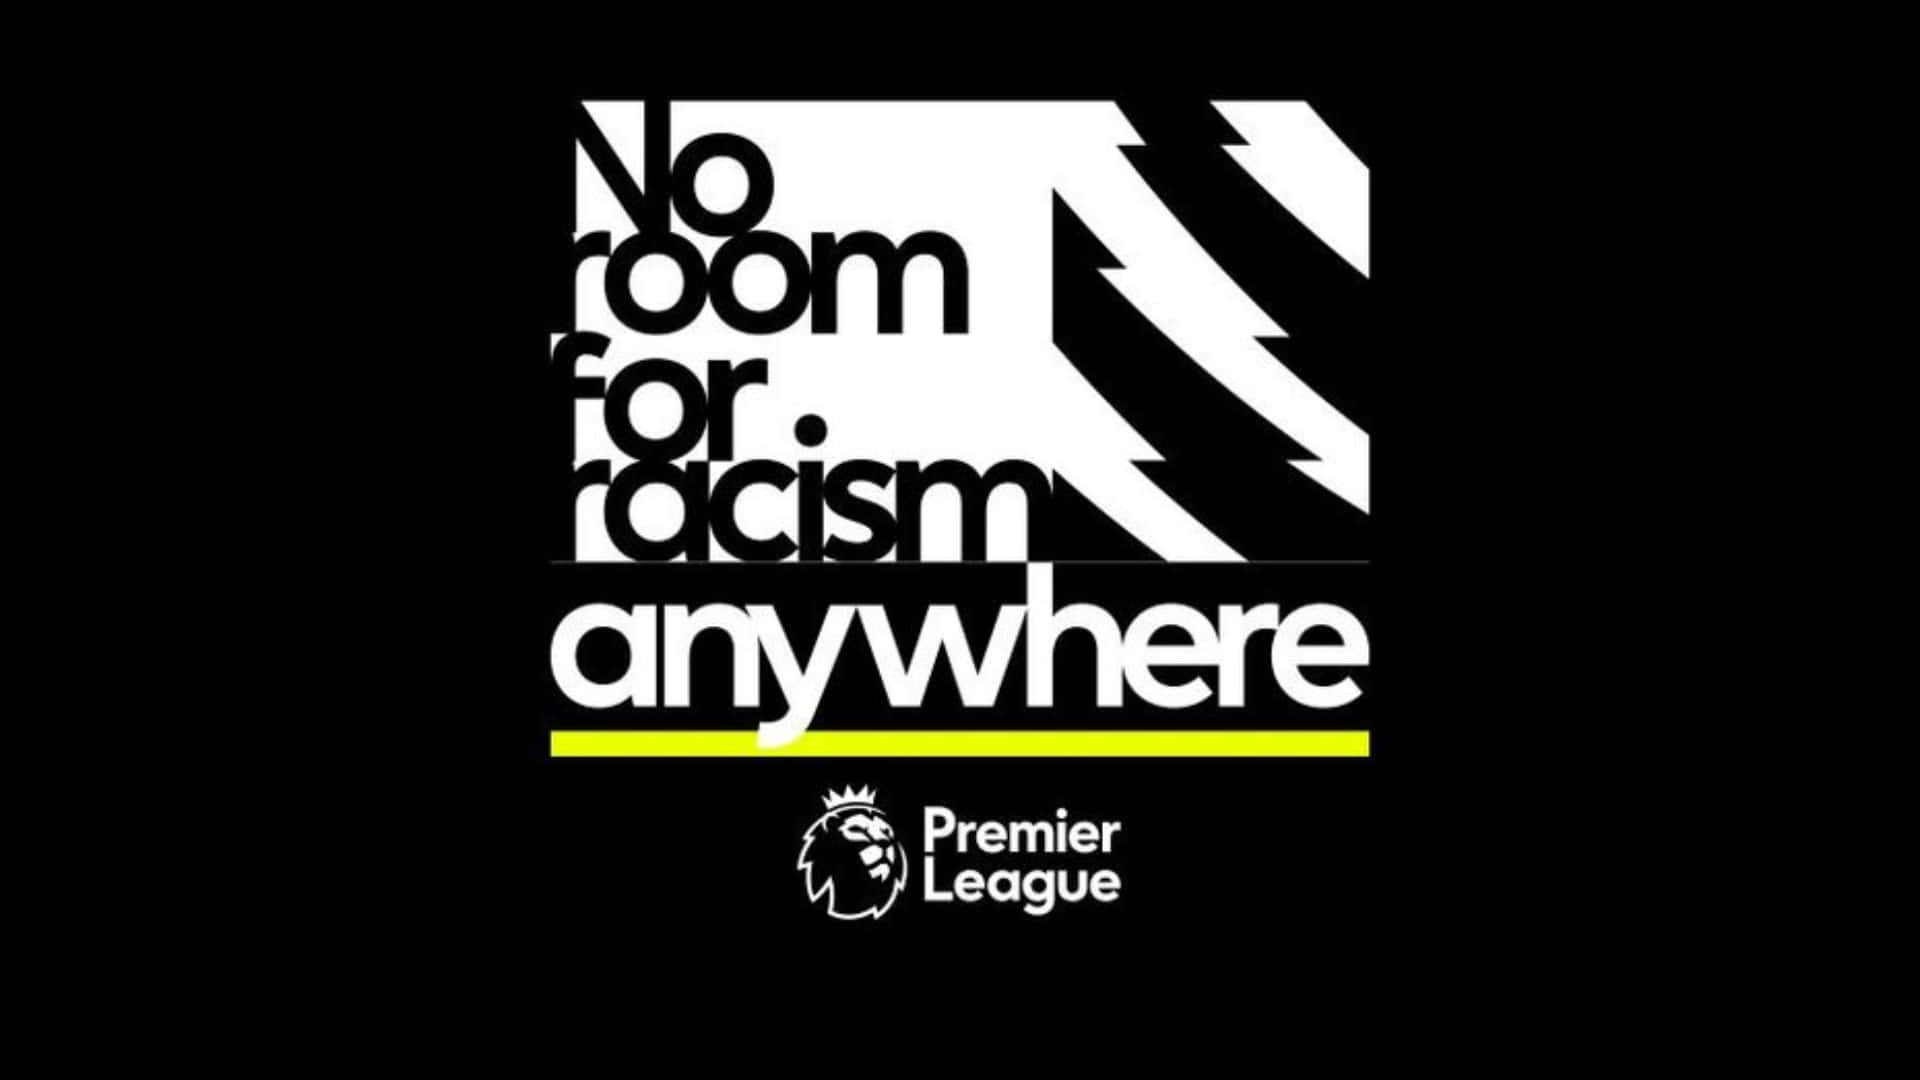 Premier League No Room For Racism Wallpaper